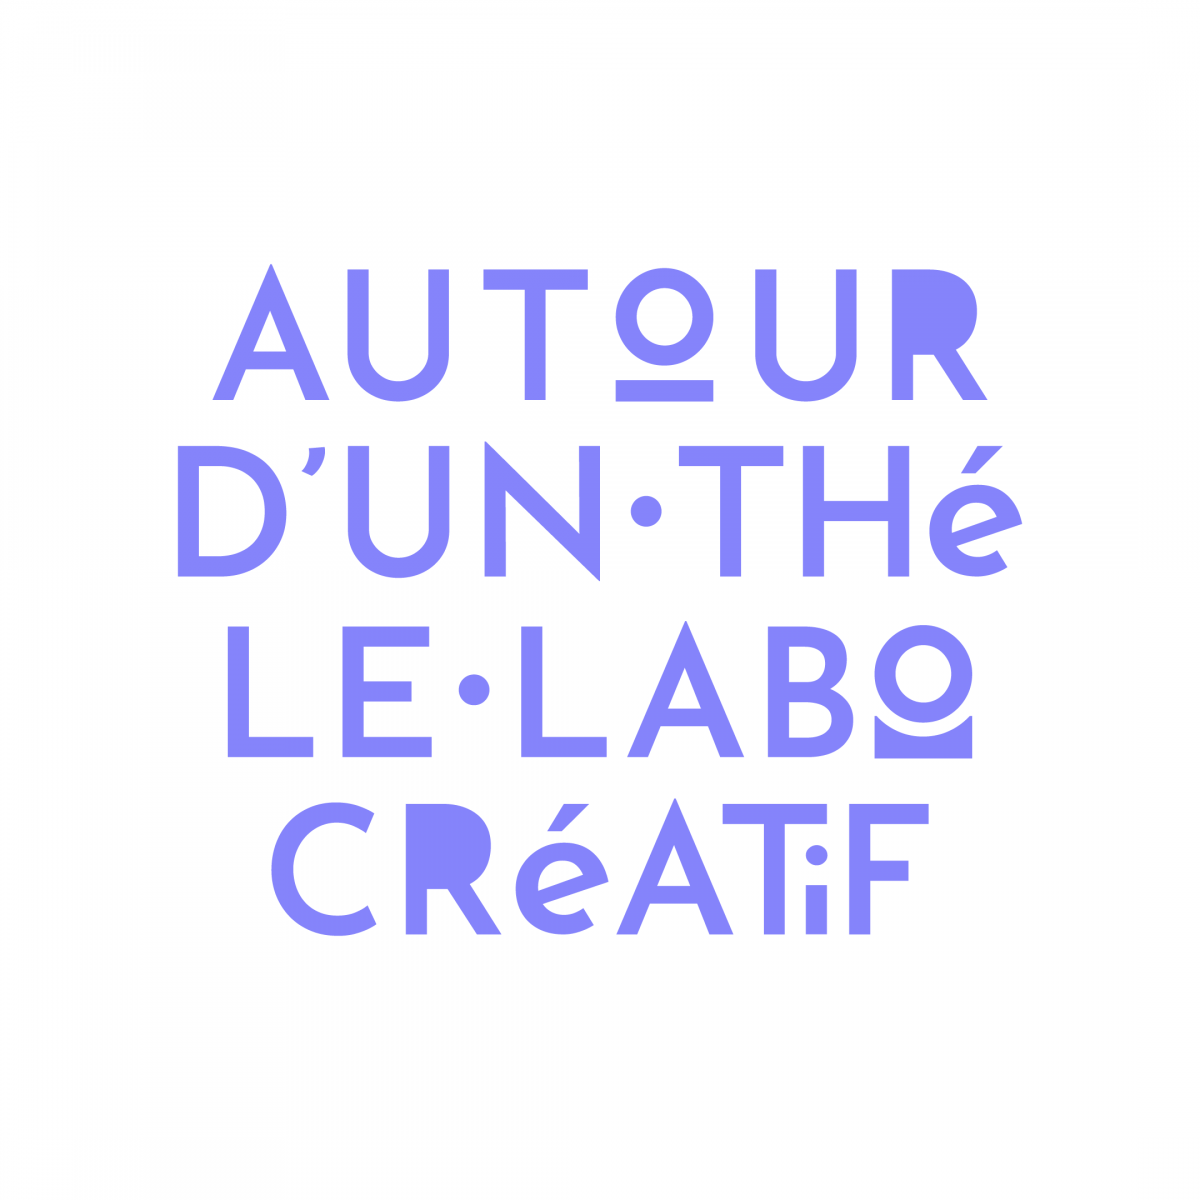 Rund um ein kreatives Teelabor – Logo 3